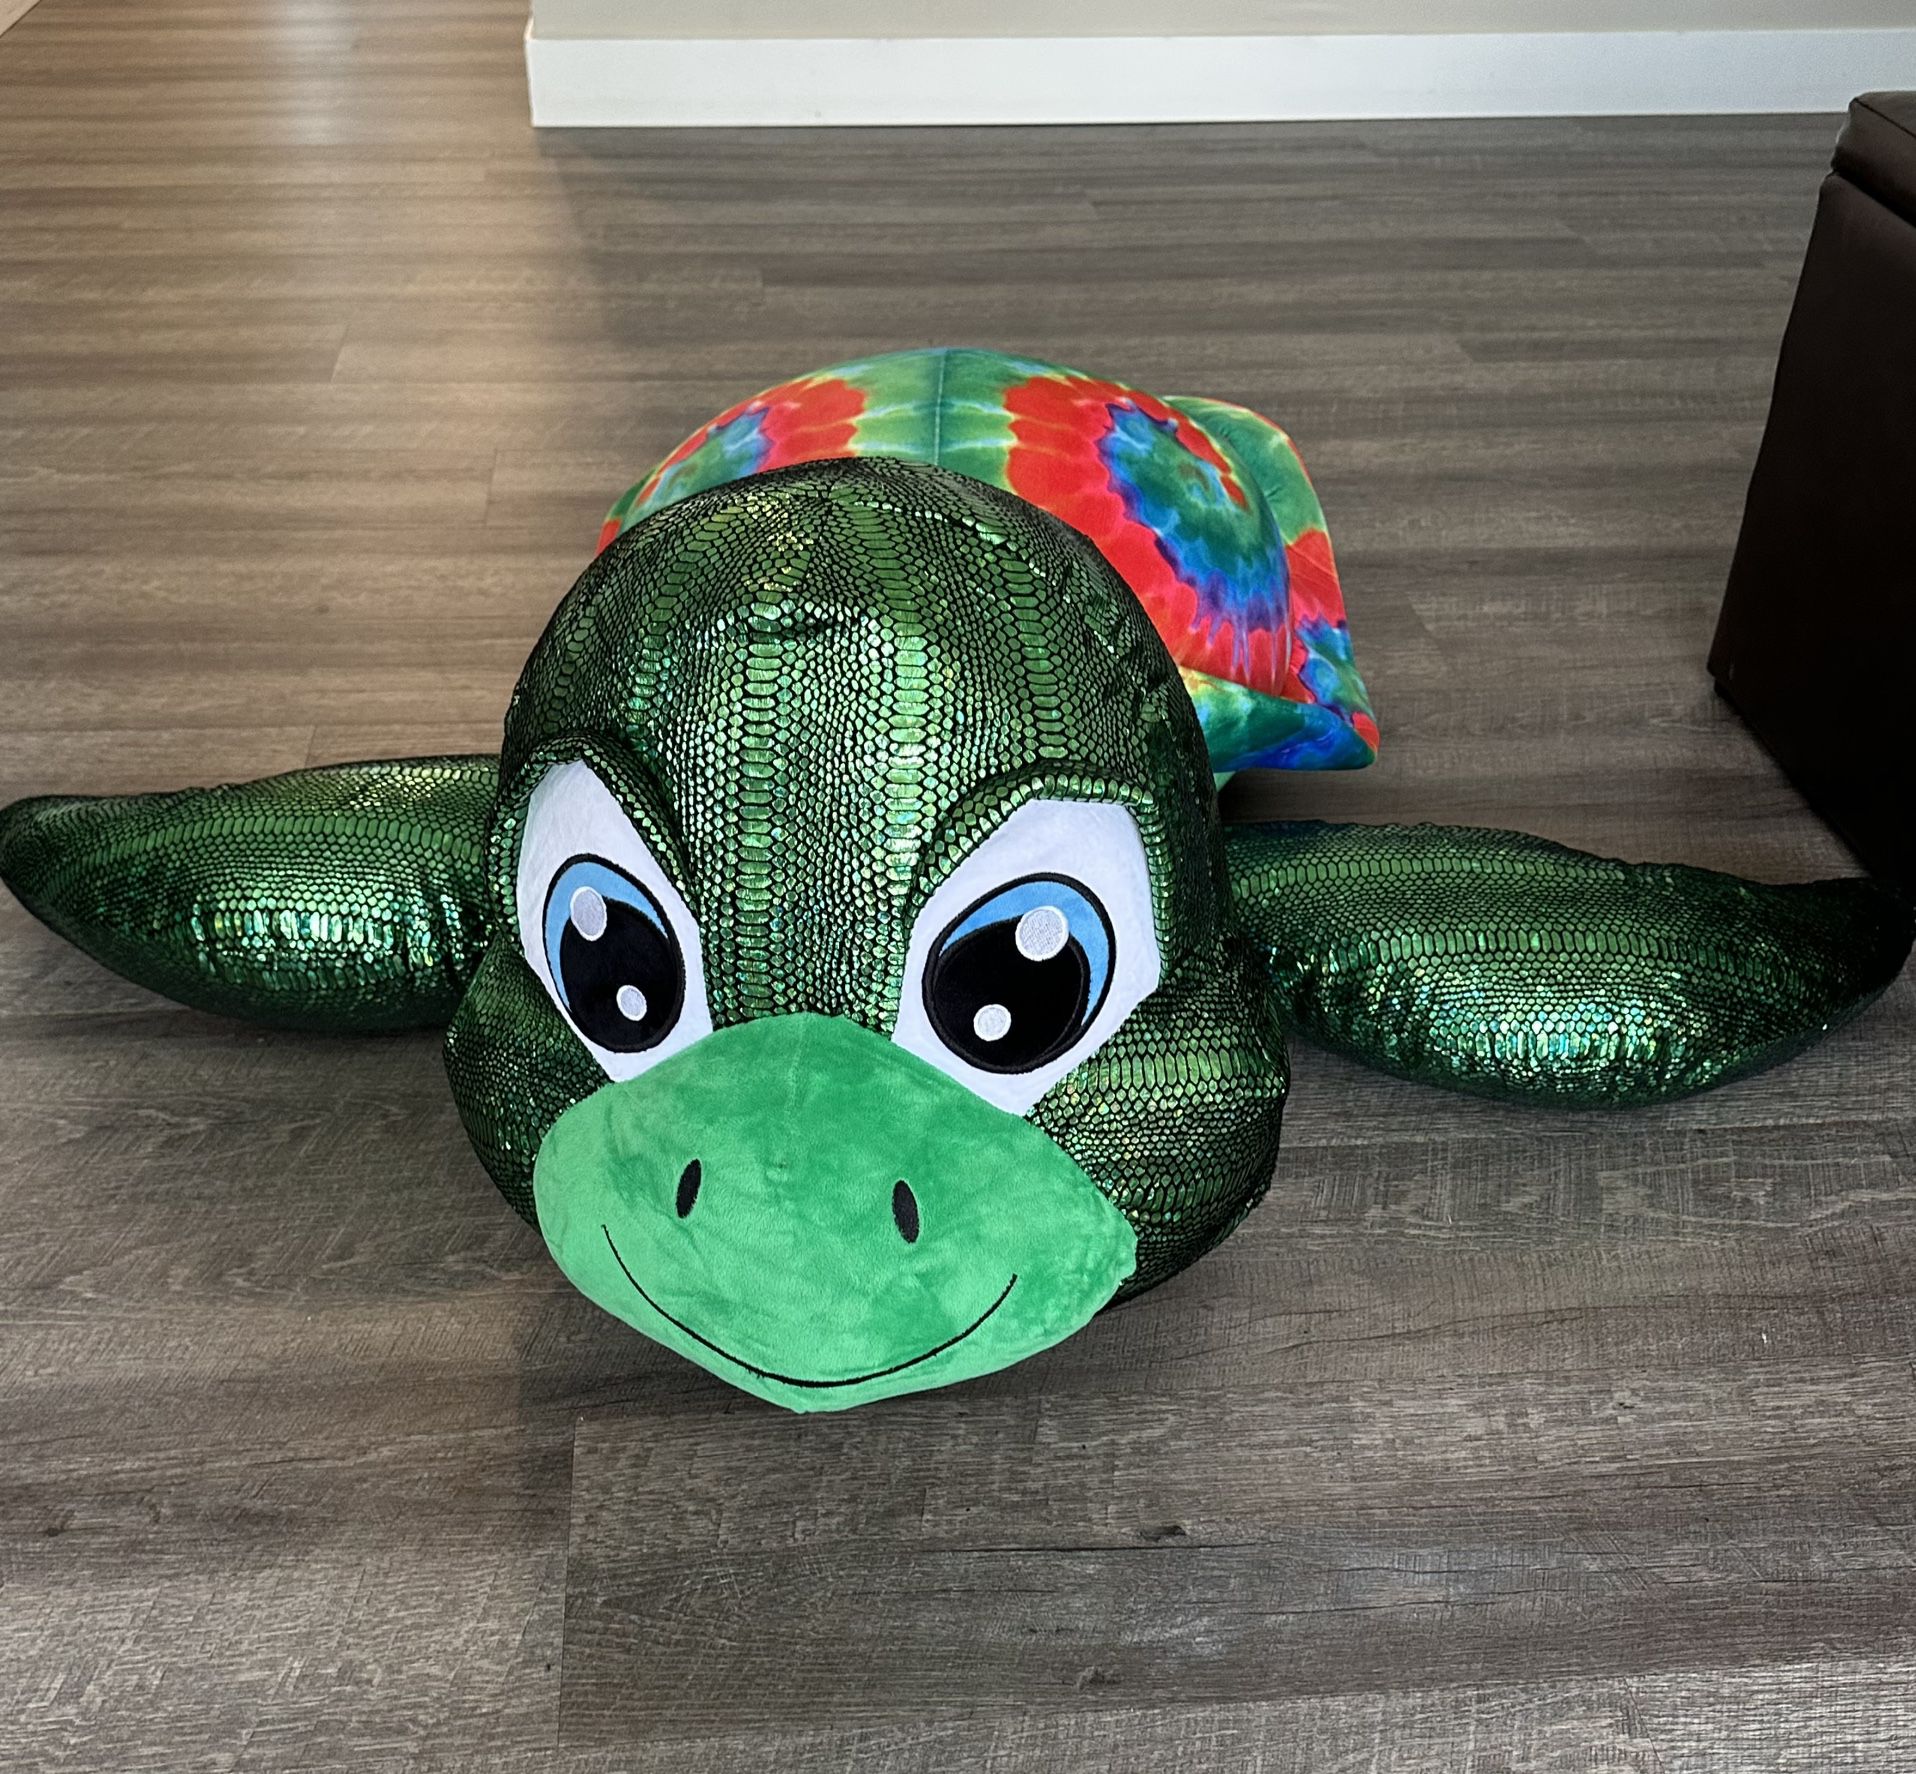 Giant Turtle Stuffed Animal 